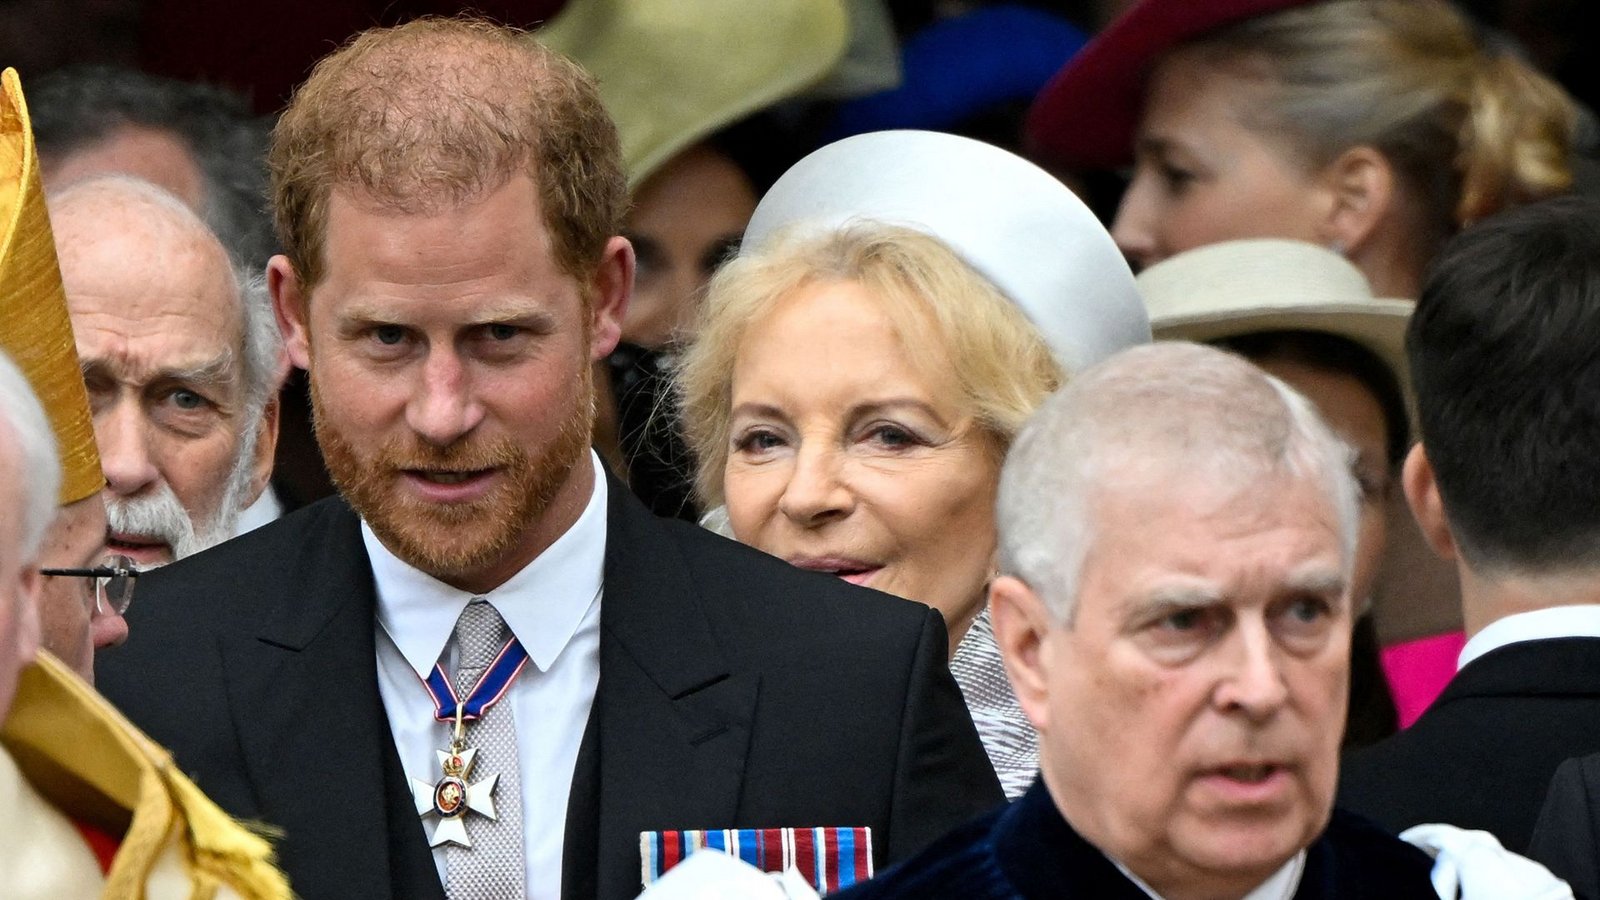 Nur unter ferner liefen: Prinz Harry und Prinz AndrewFoto: AFP/TOBY MELVILLE